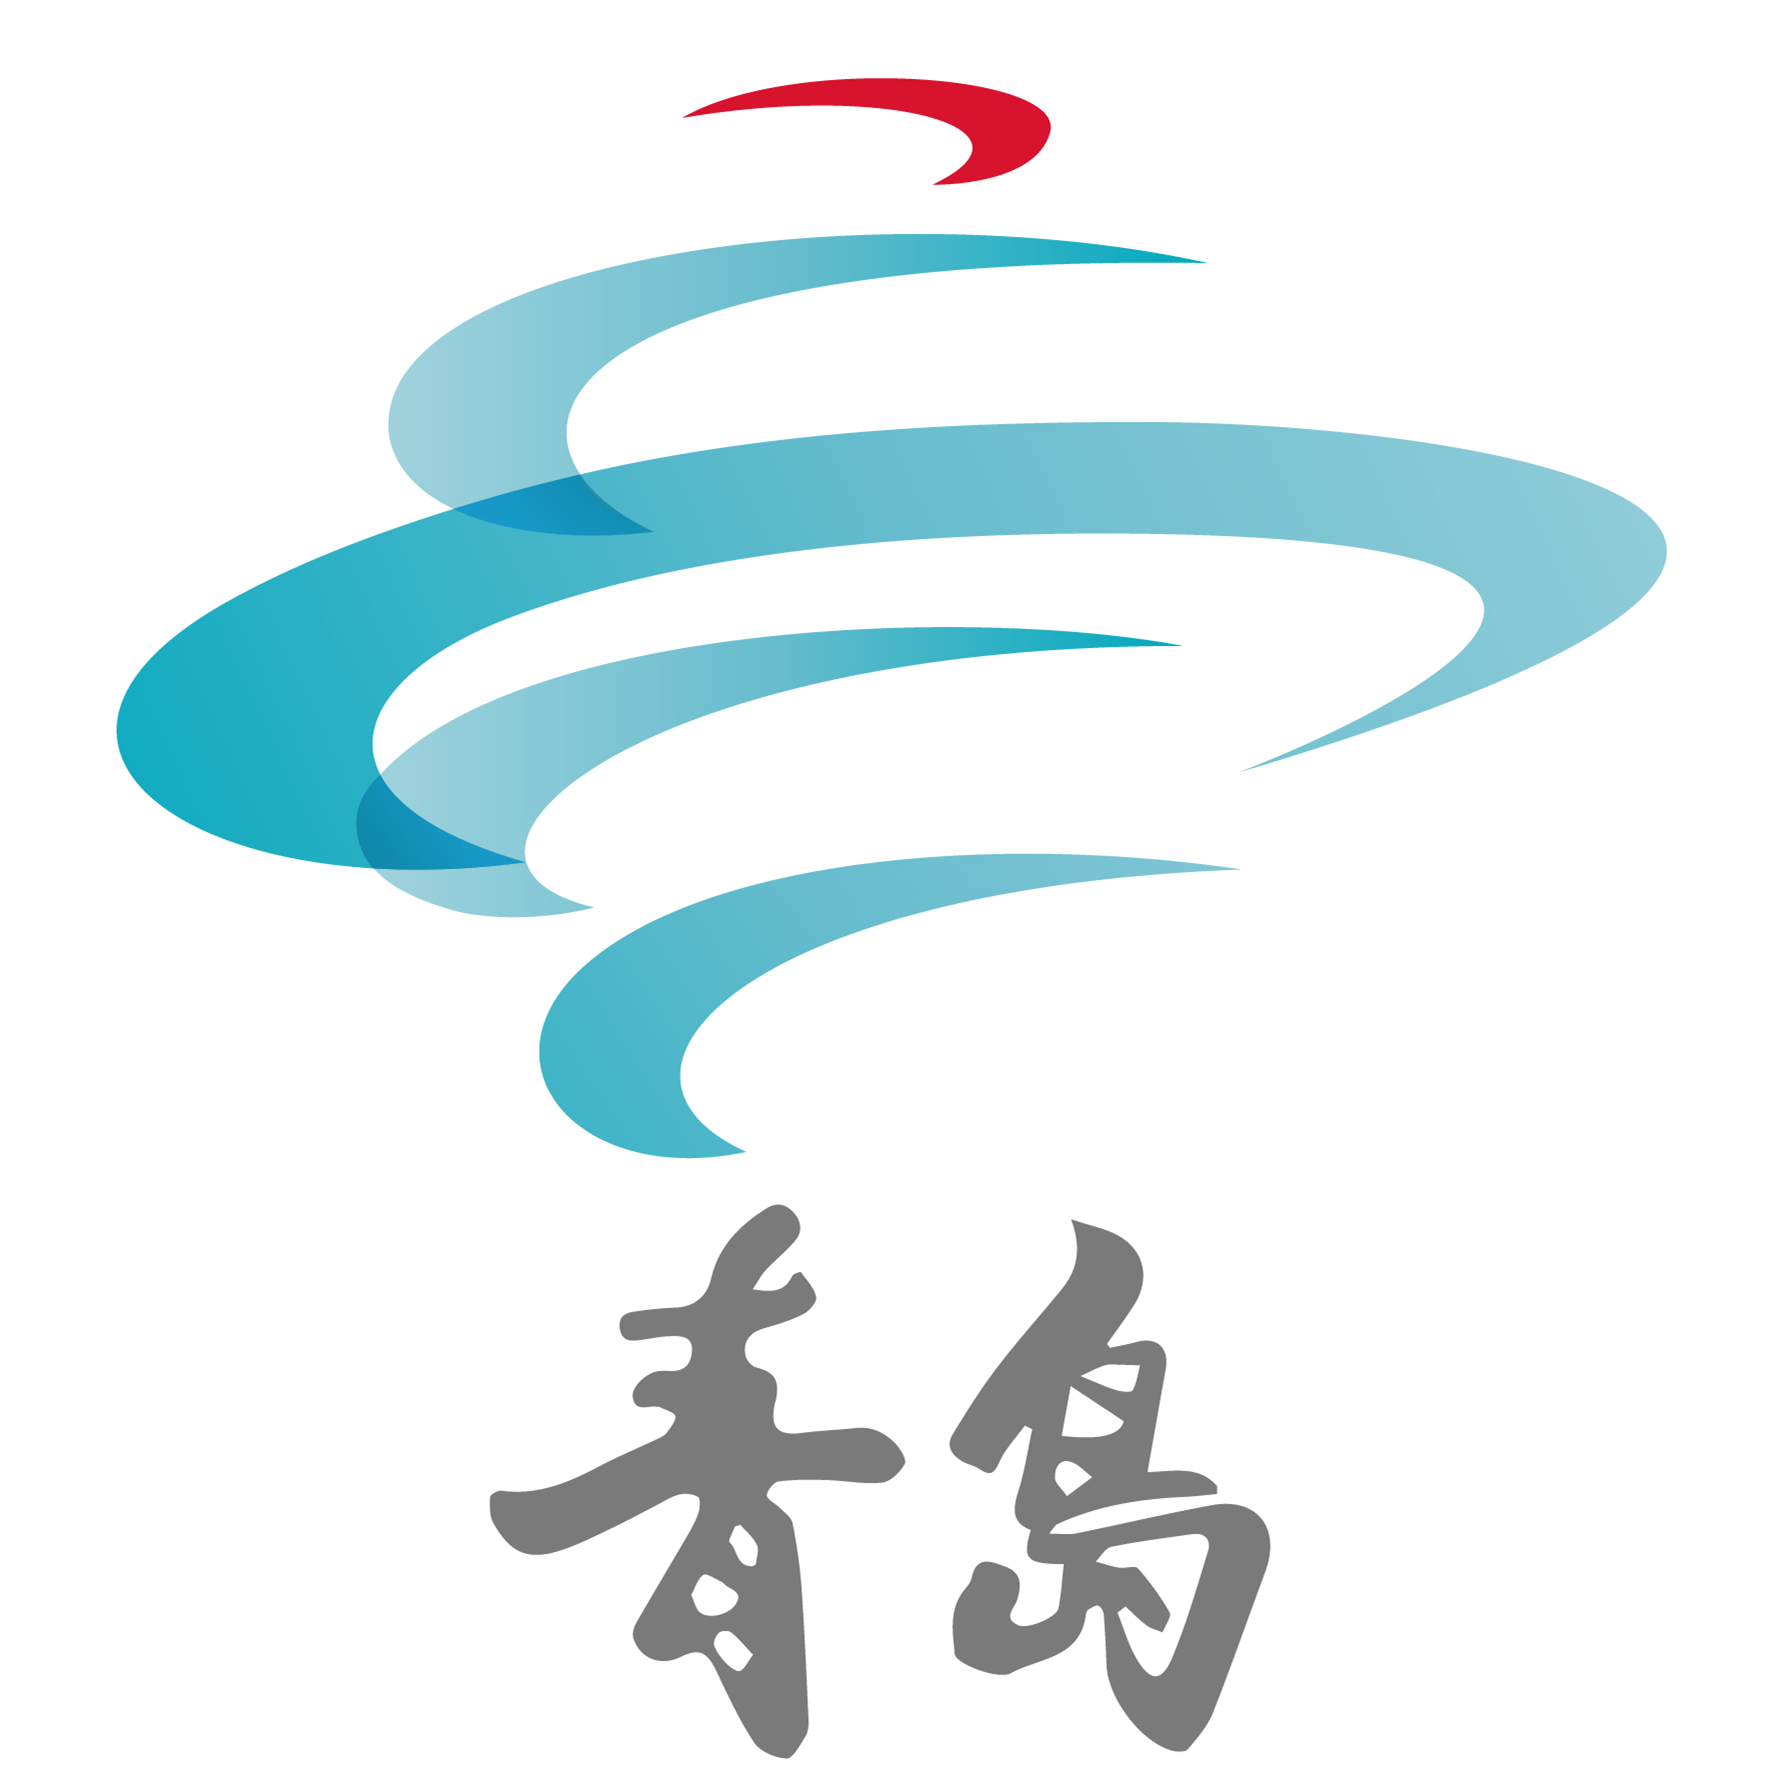 青岛城市形象logo图片